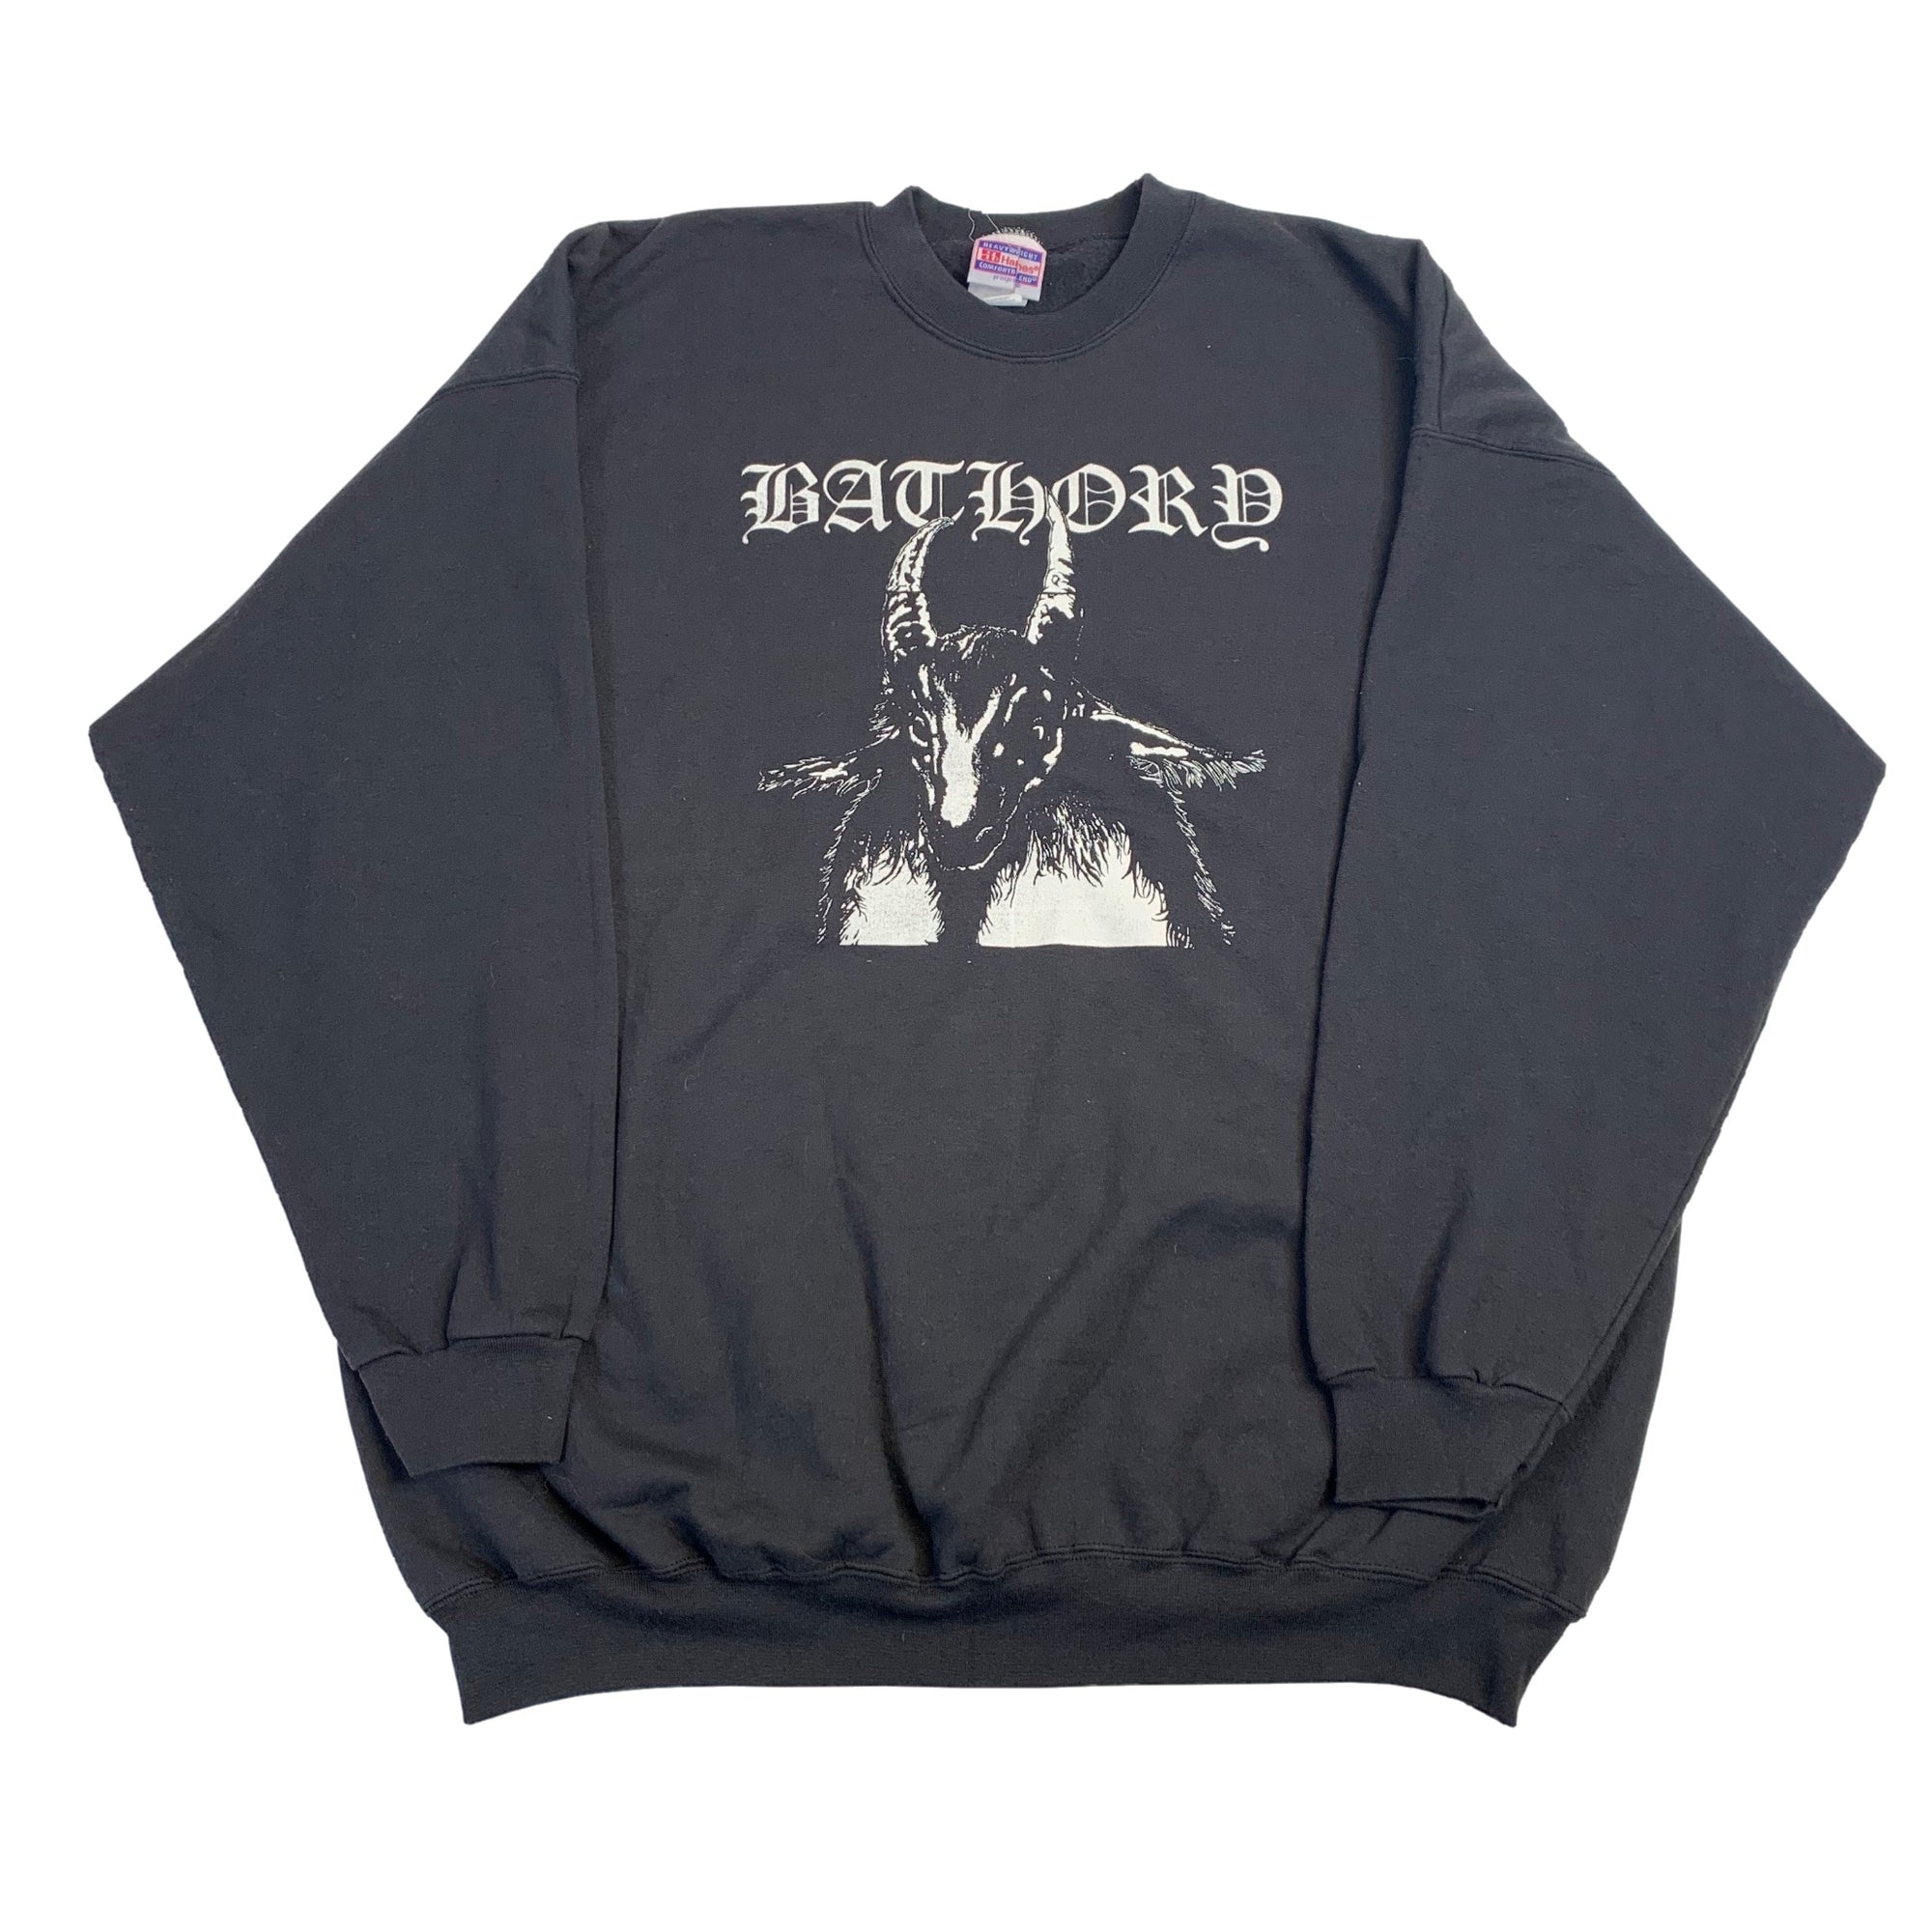 Vintage Bathory "Bathory" Crewneck Sweatshirt - jointcustodydc